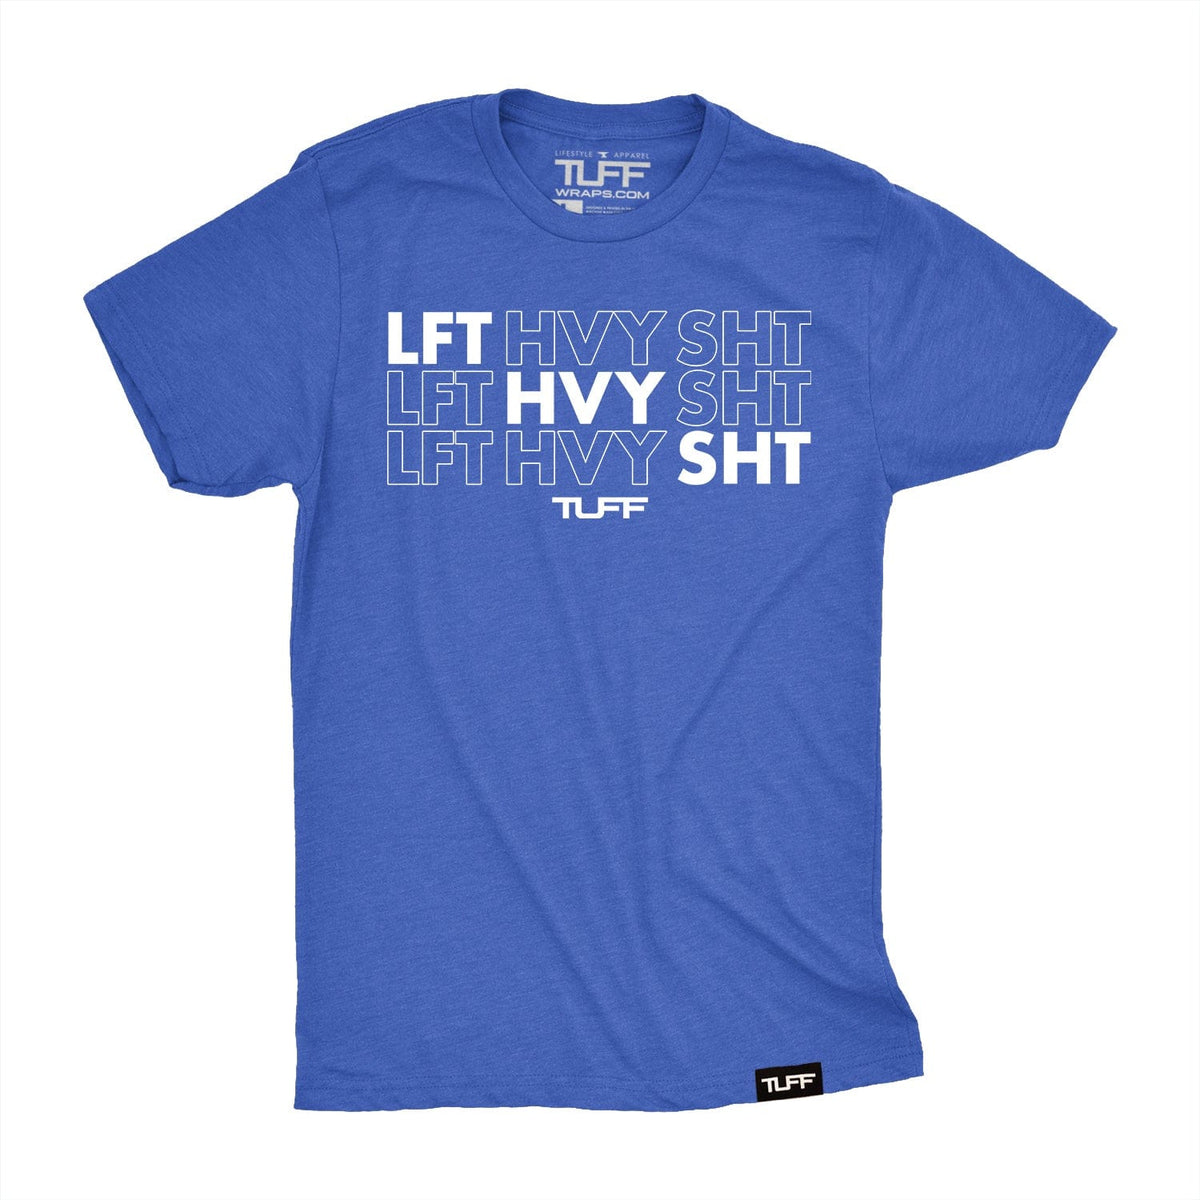 LFT HVY SHT Tee S / Vintage Blue TuffWraps.com